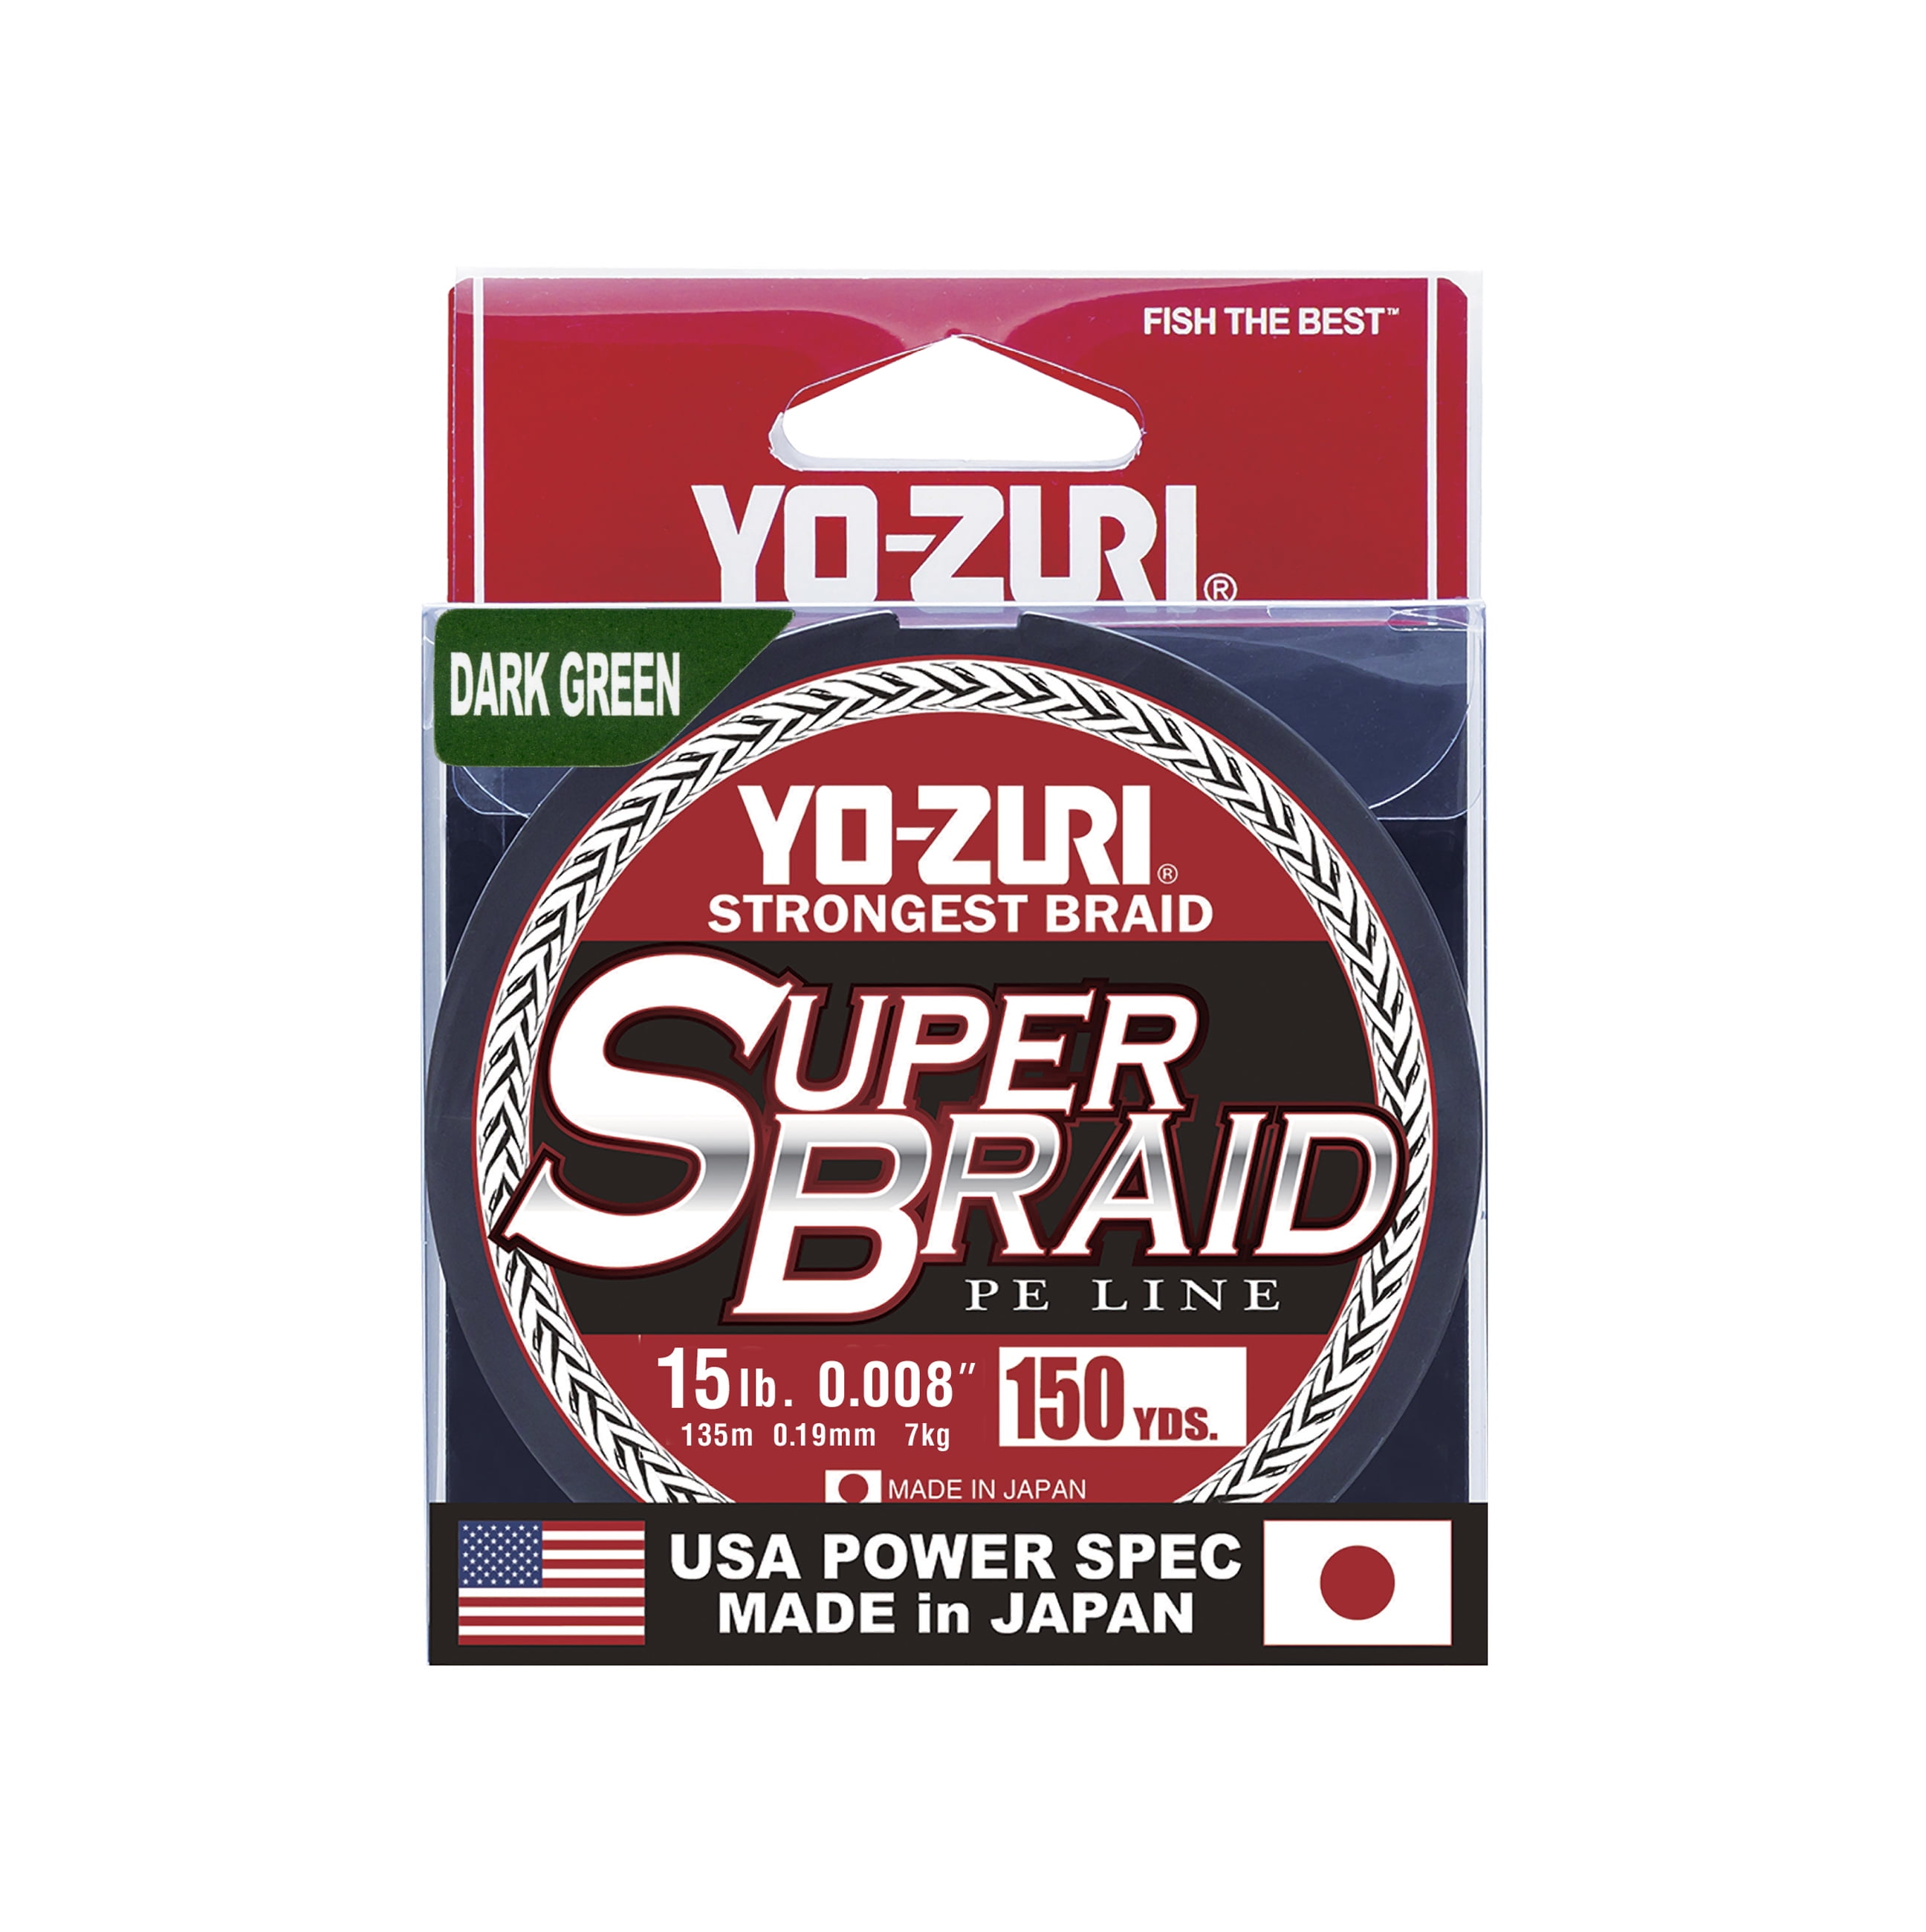 Fabric Super Braid 0,19mm Yo-Zuri 15 LB Dark Green 275 MT Canister braid 